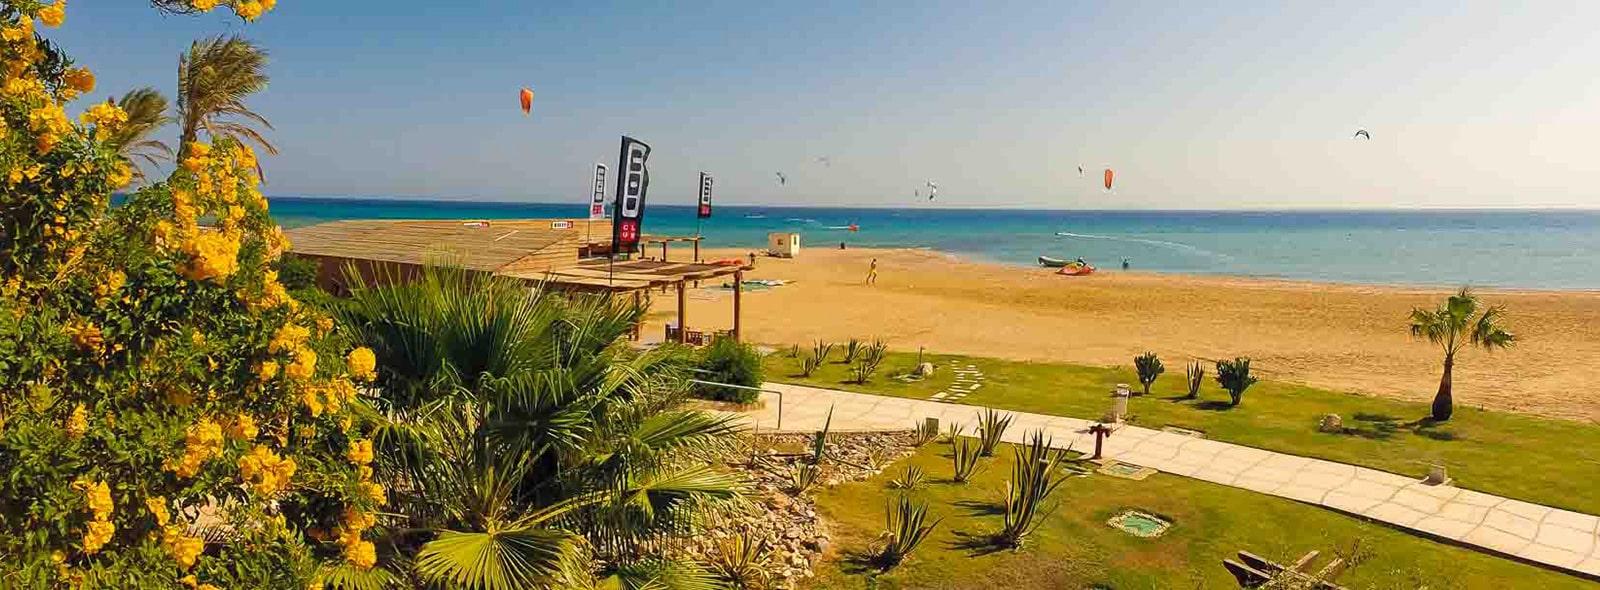 Apprenez le kitesurf avec ION CLUB Safaga en Egypte 1